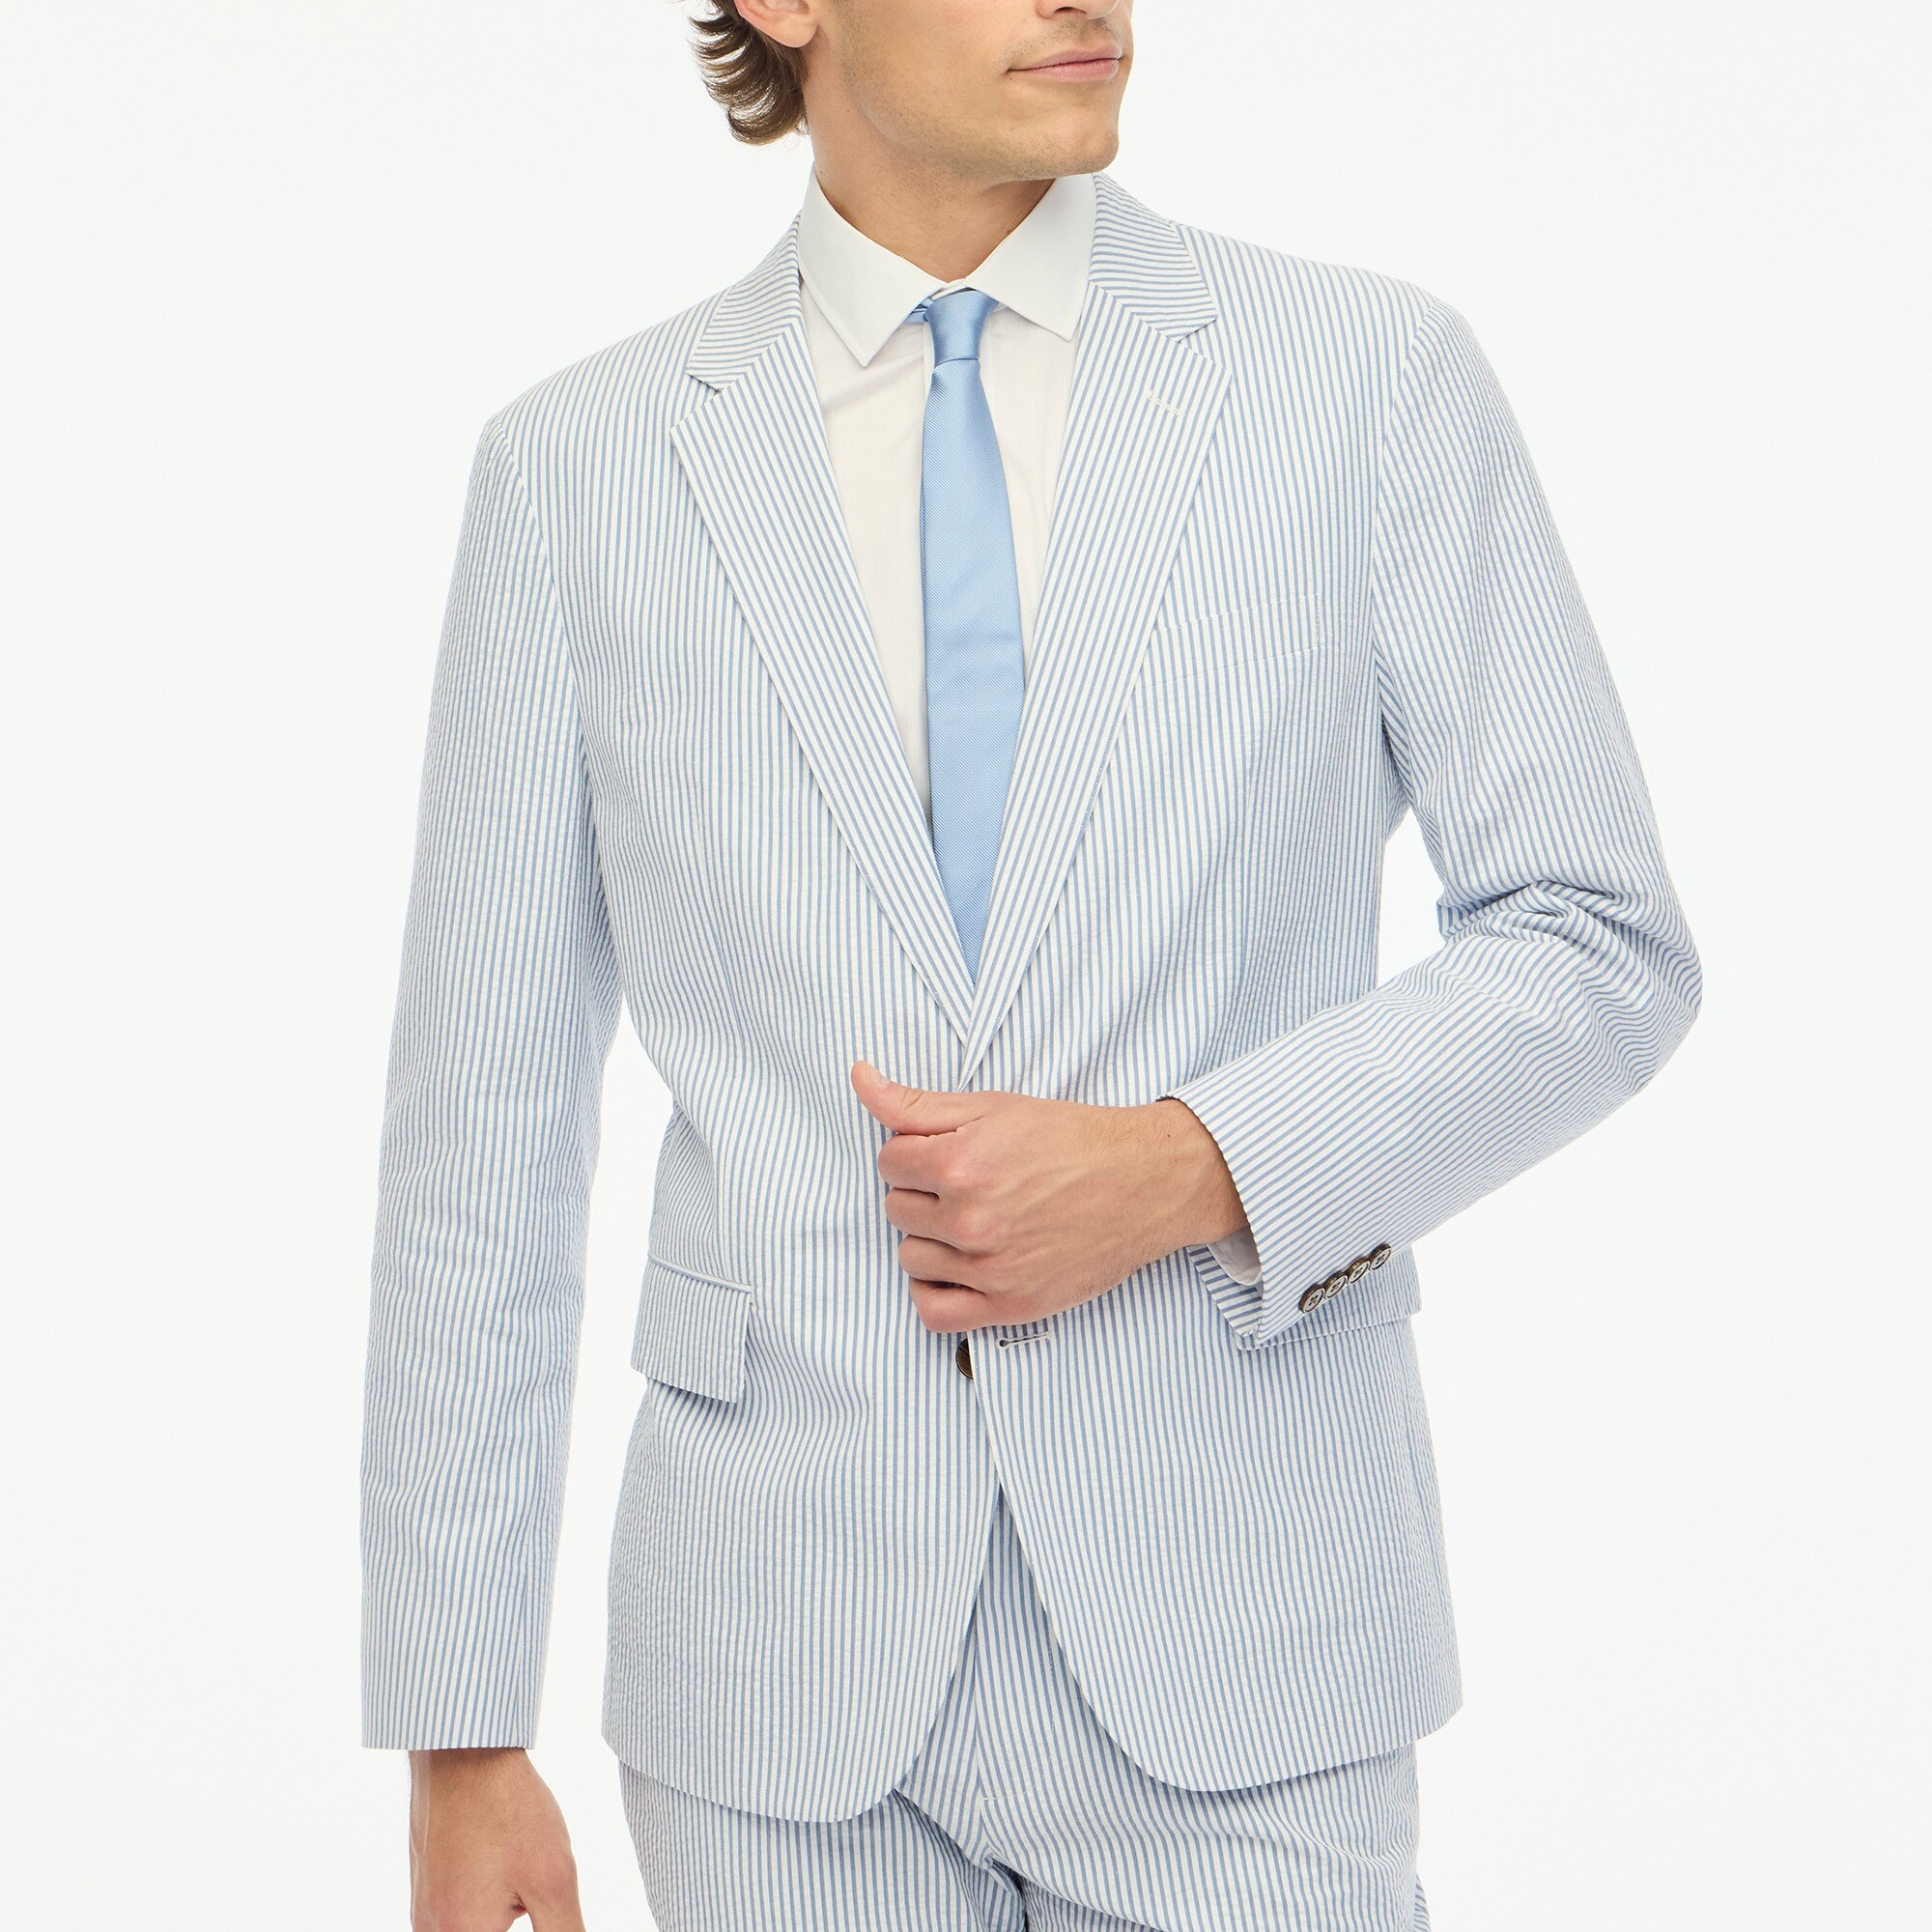  Slim unstructured Thompson suit jacket in seersucker